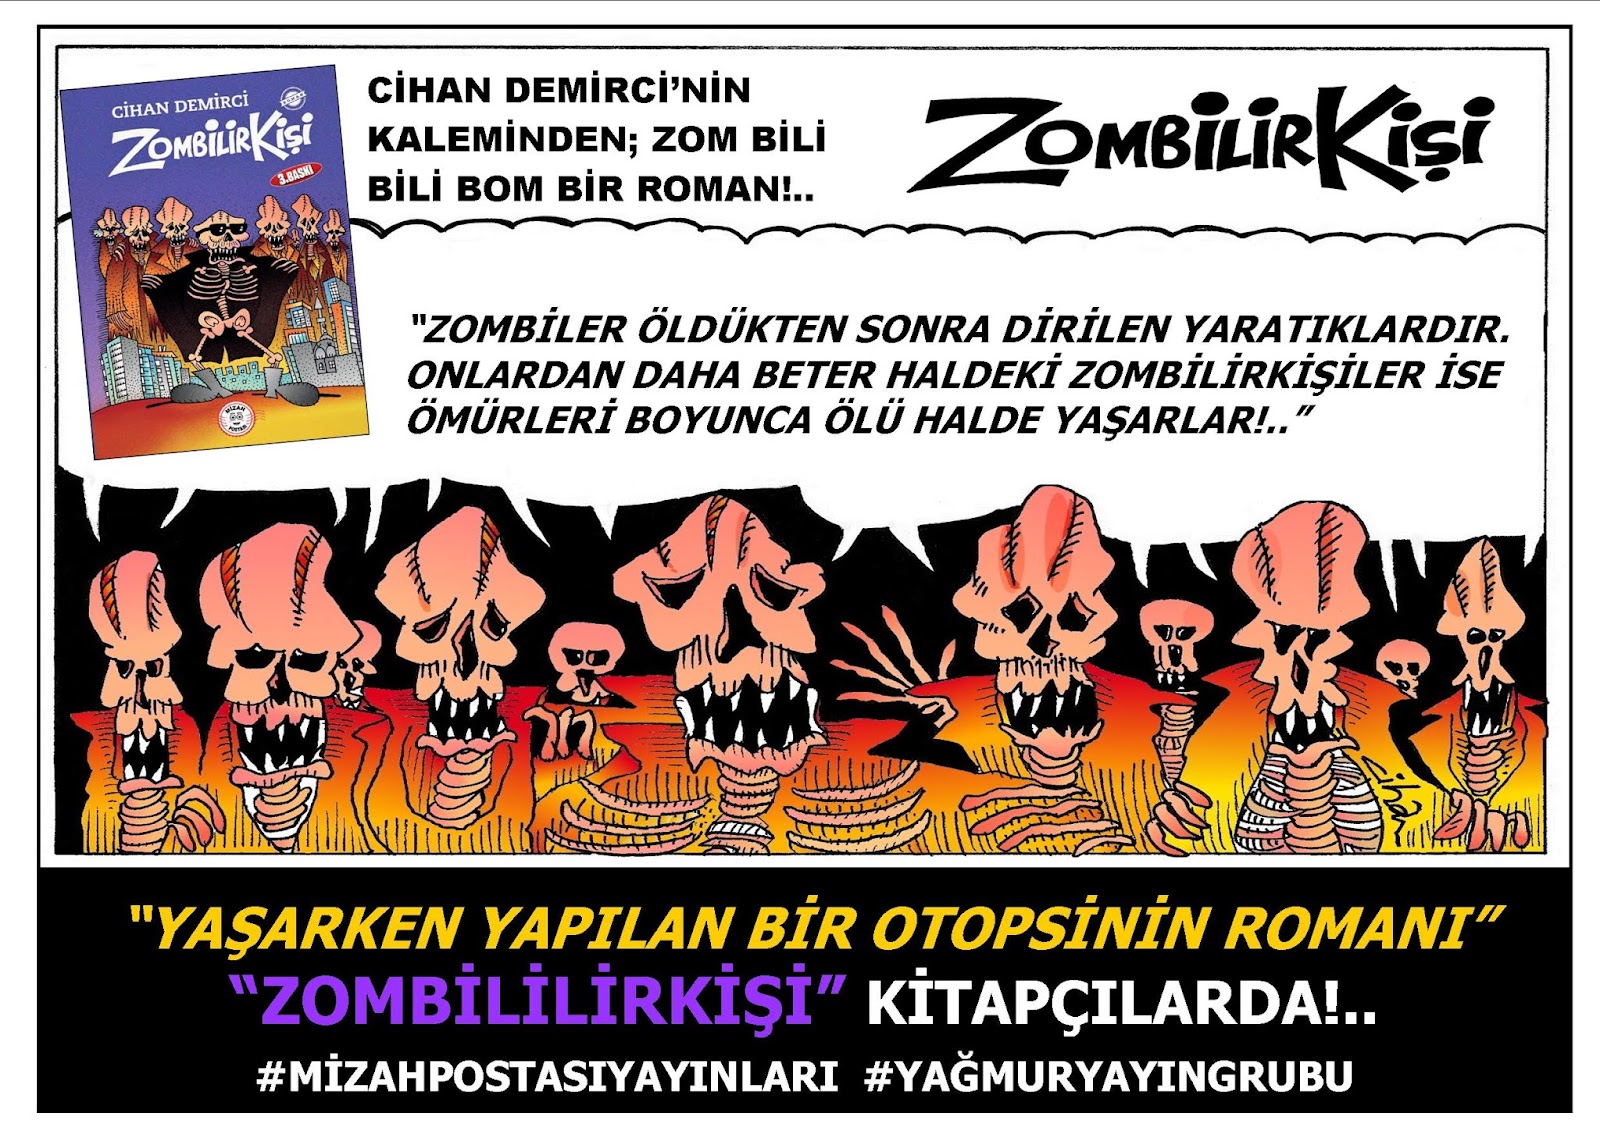 CİHAN DEMİRCİ'NİN CİDDEN-DARP ROMANI "ZOMBİLİRKİŞİ"NİN 3. BASIMI KİTAPÇILARDA!..